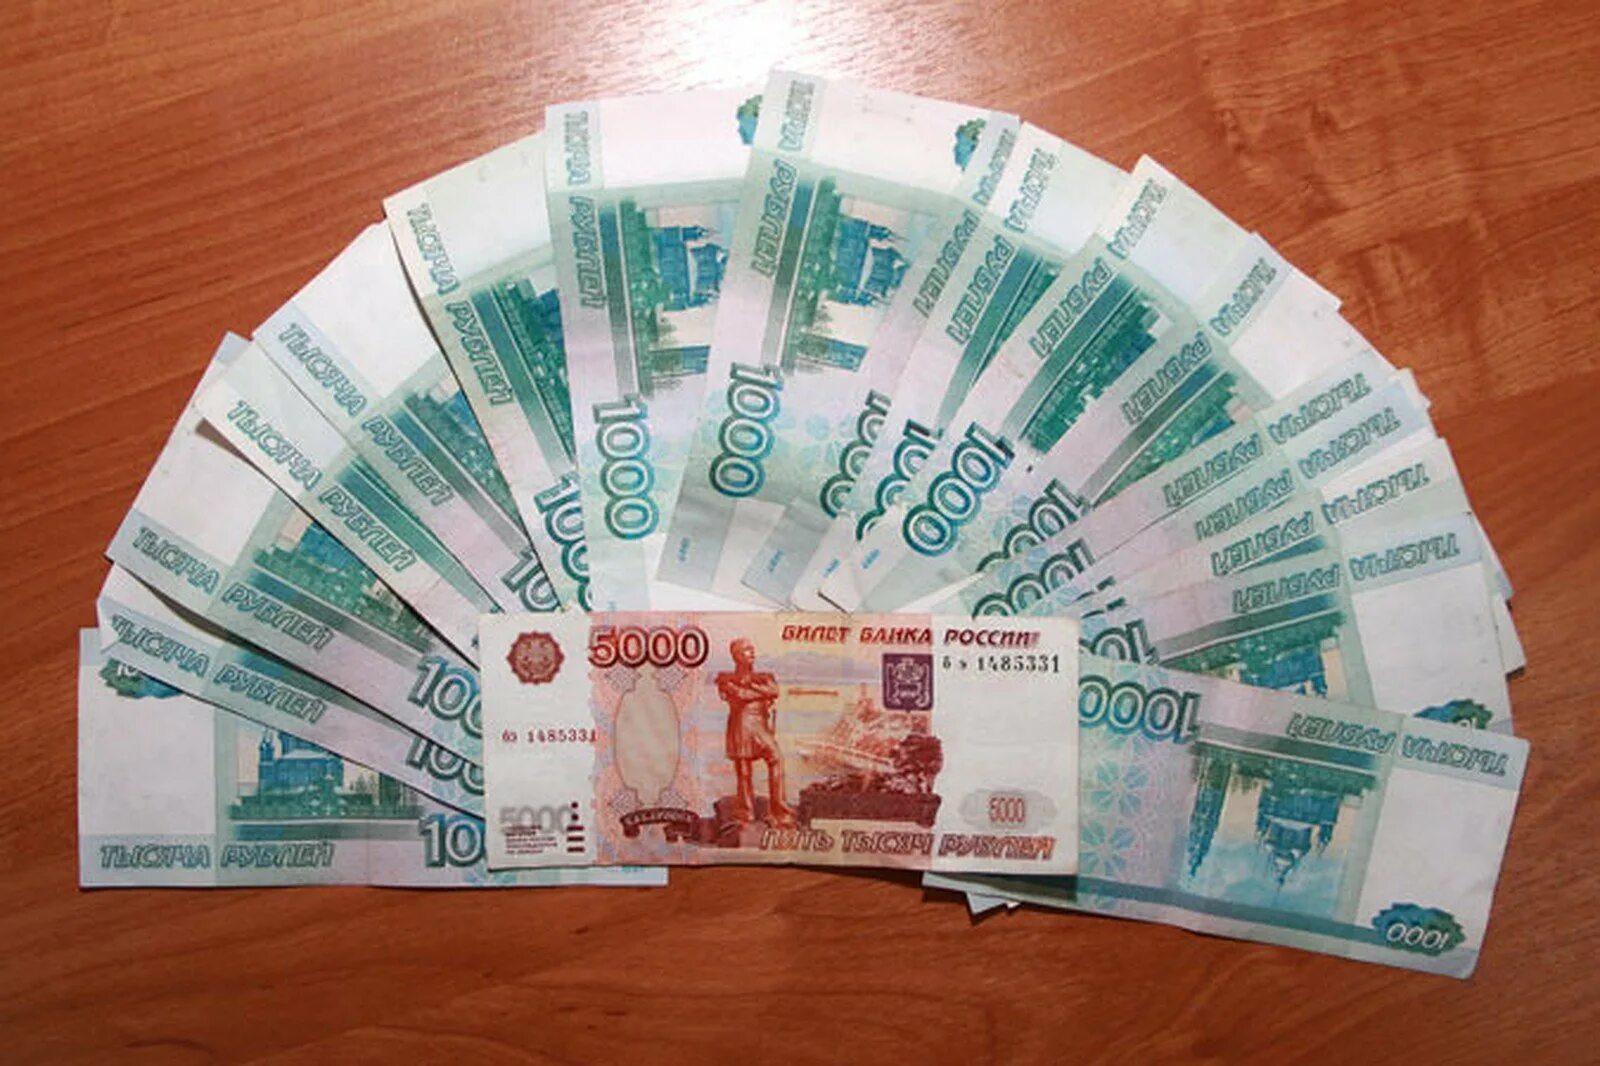 13 от 20 000 рублей. 22 Тысячи рублей. Тысячные купюры на столе. Деньги на столе. Деньги рубли.